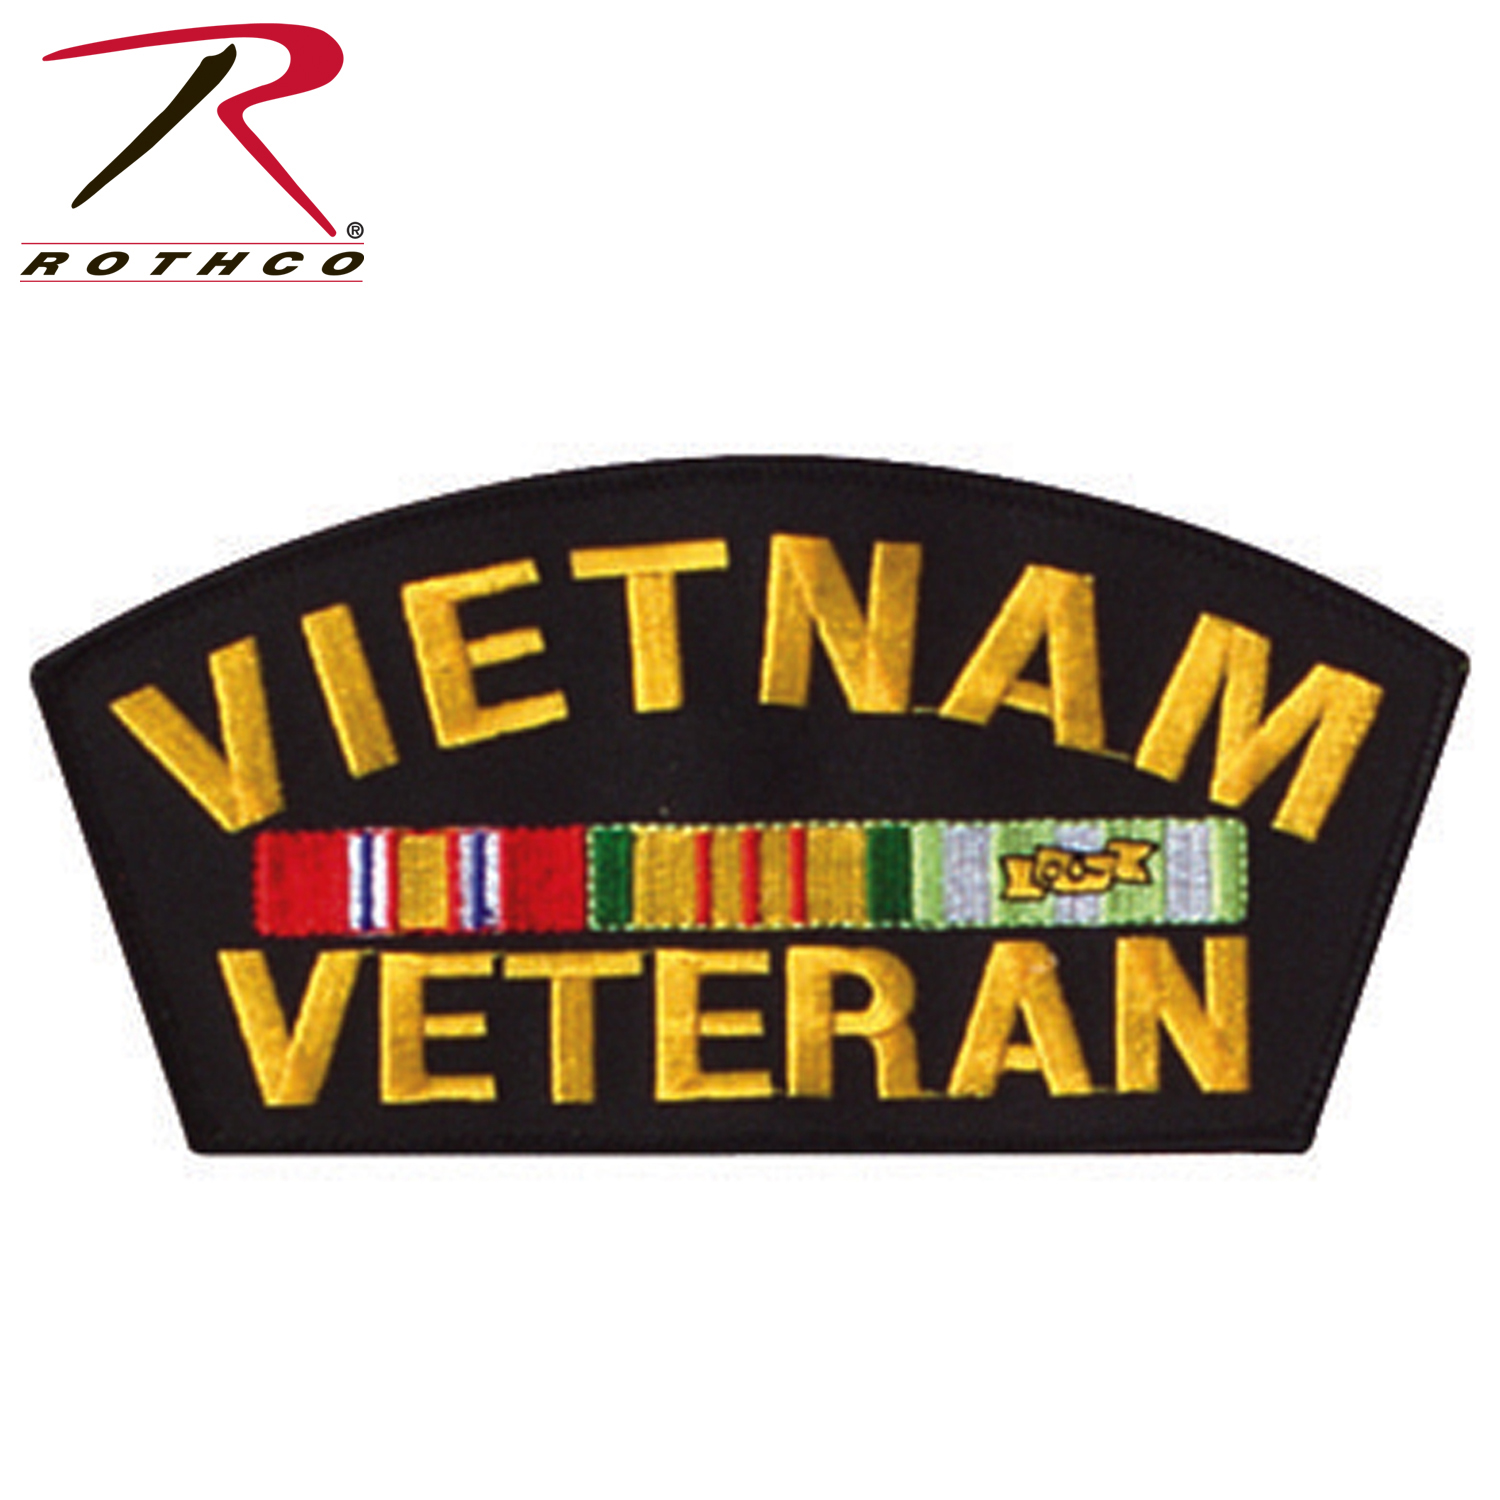 Rothco Vietnam Veteran Patch 6''